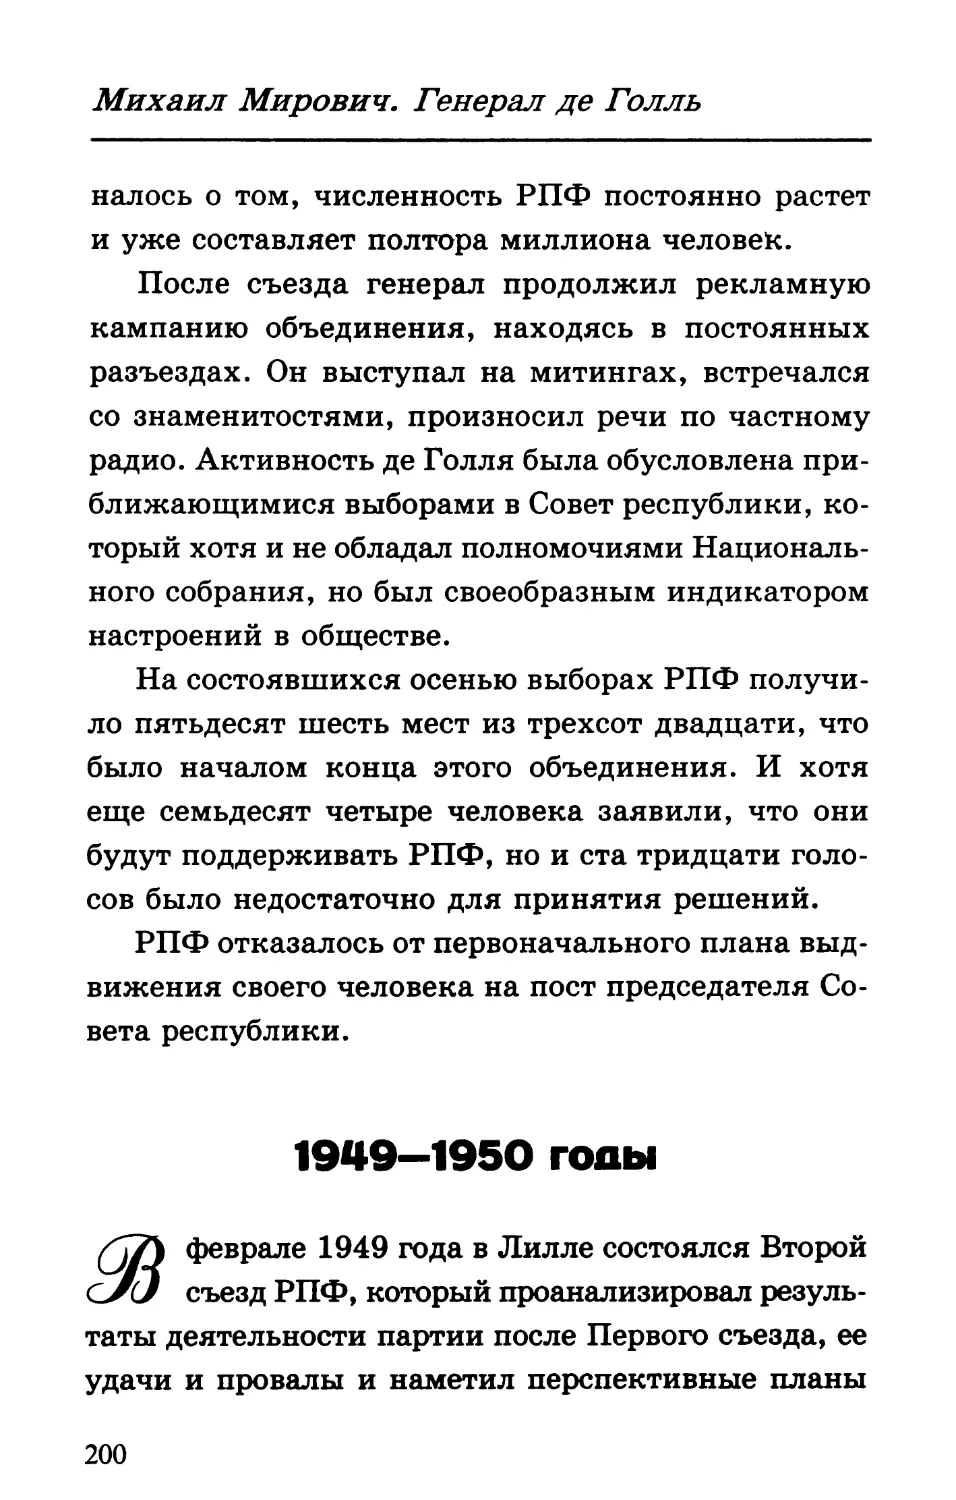 1949—1950 годы